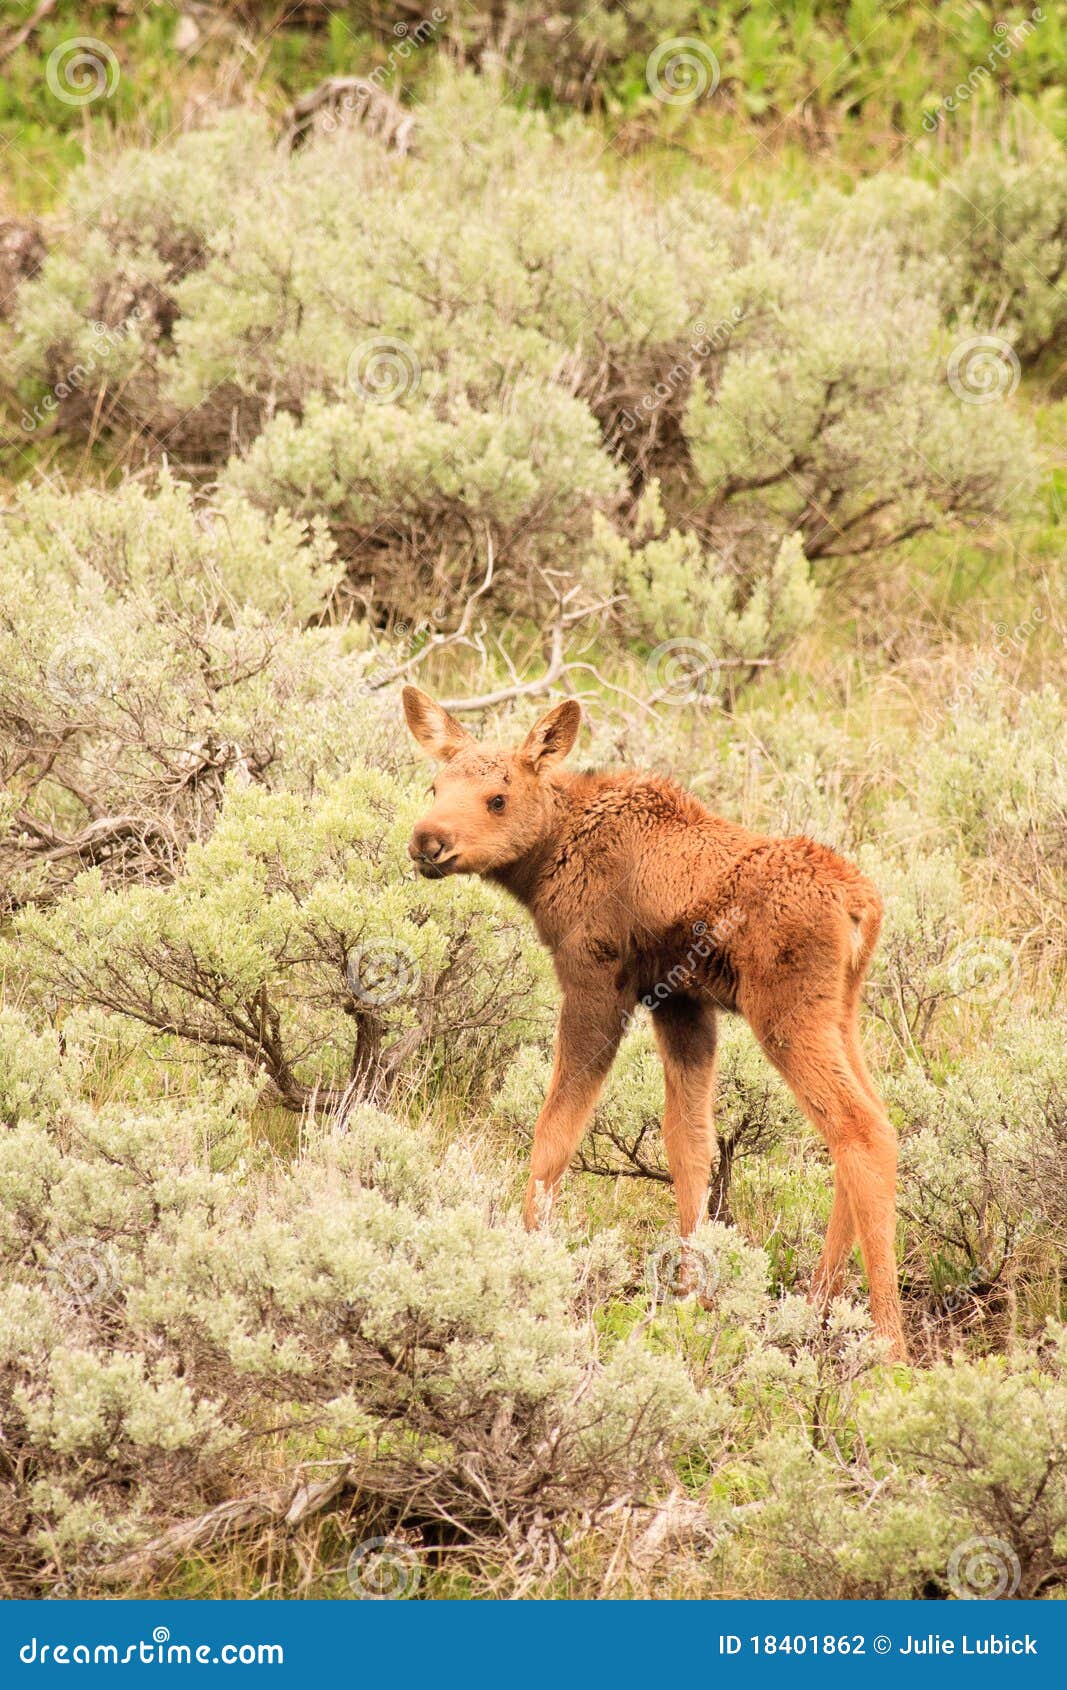 moose calf in sagebrush